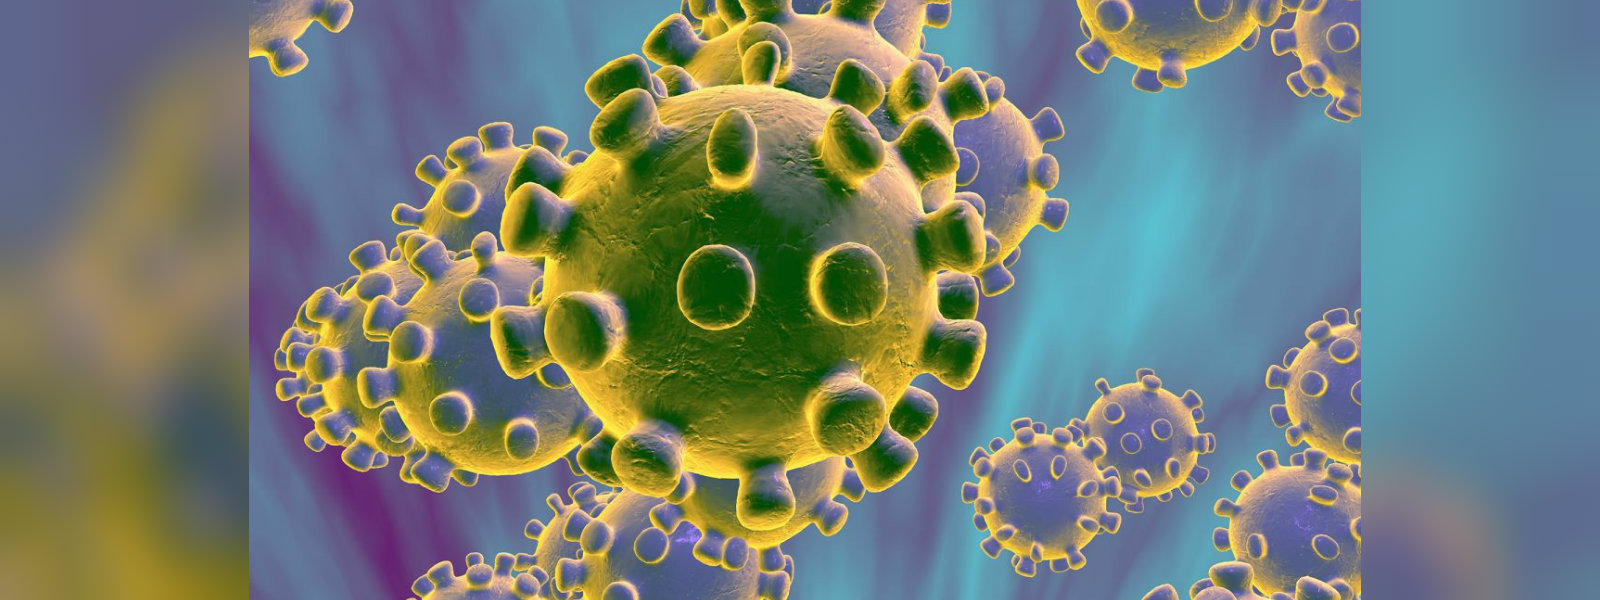 17 suspected coronavirus patients in 4 hospitals